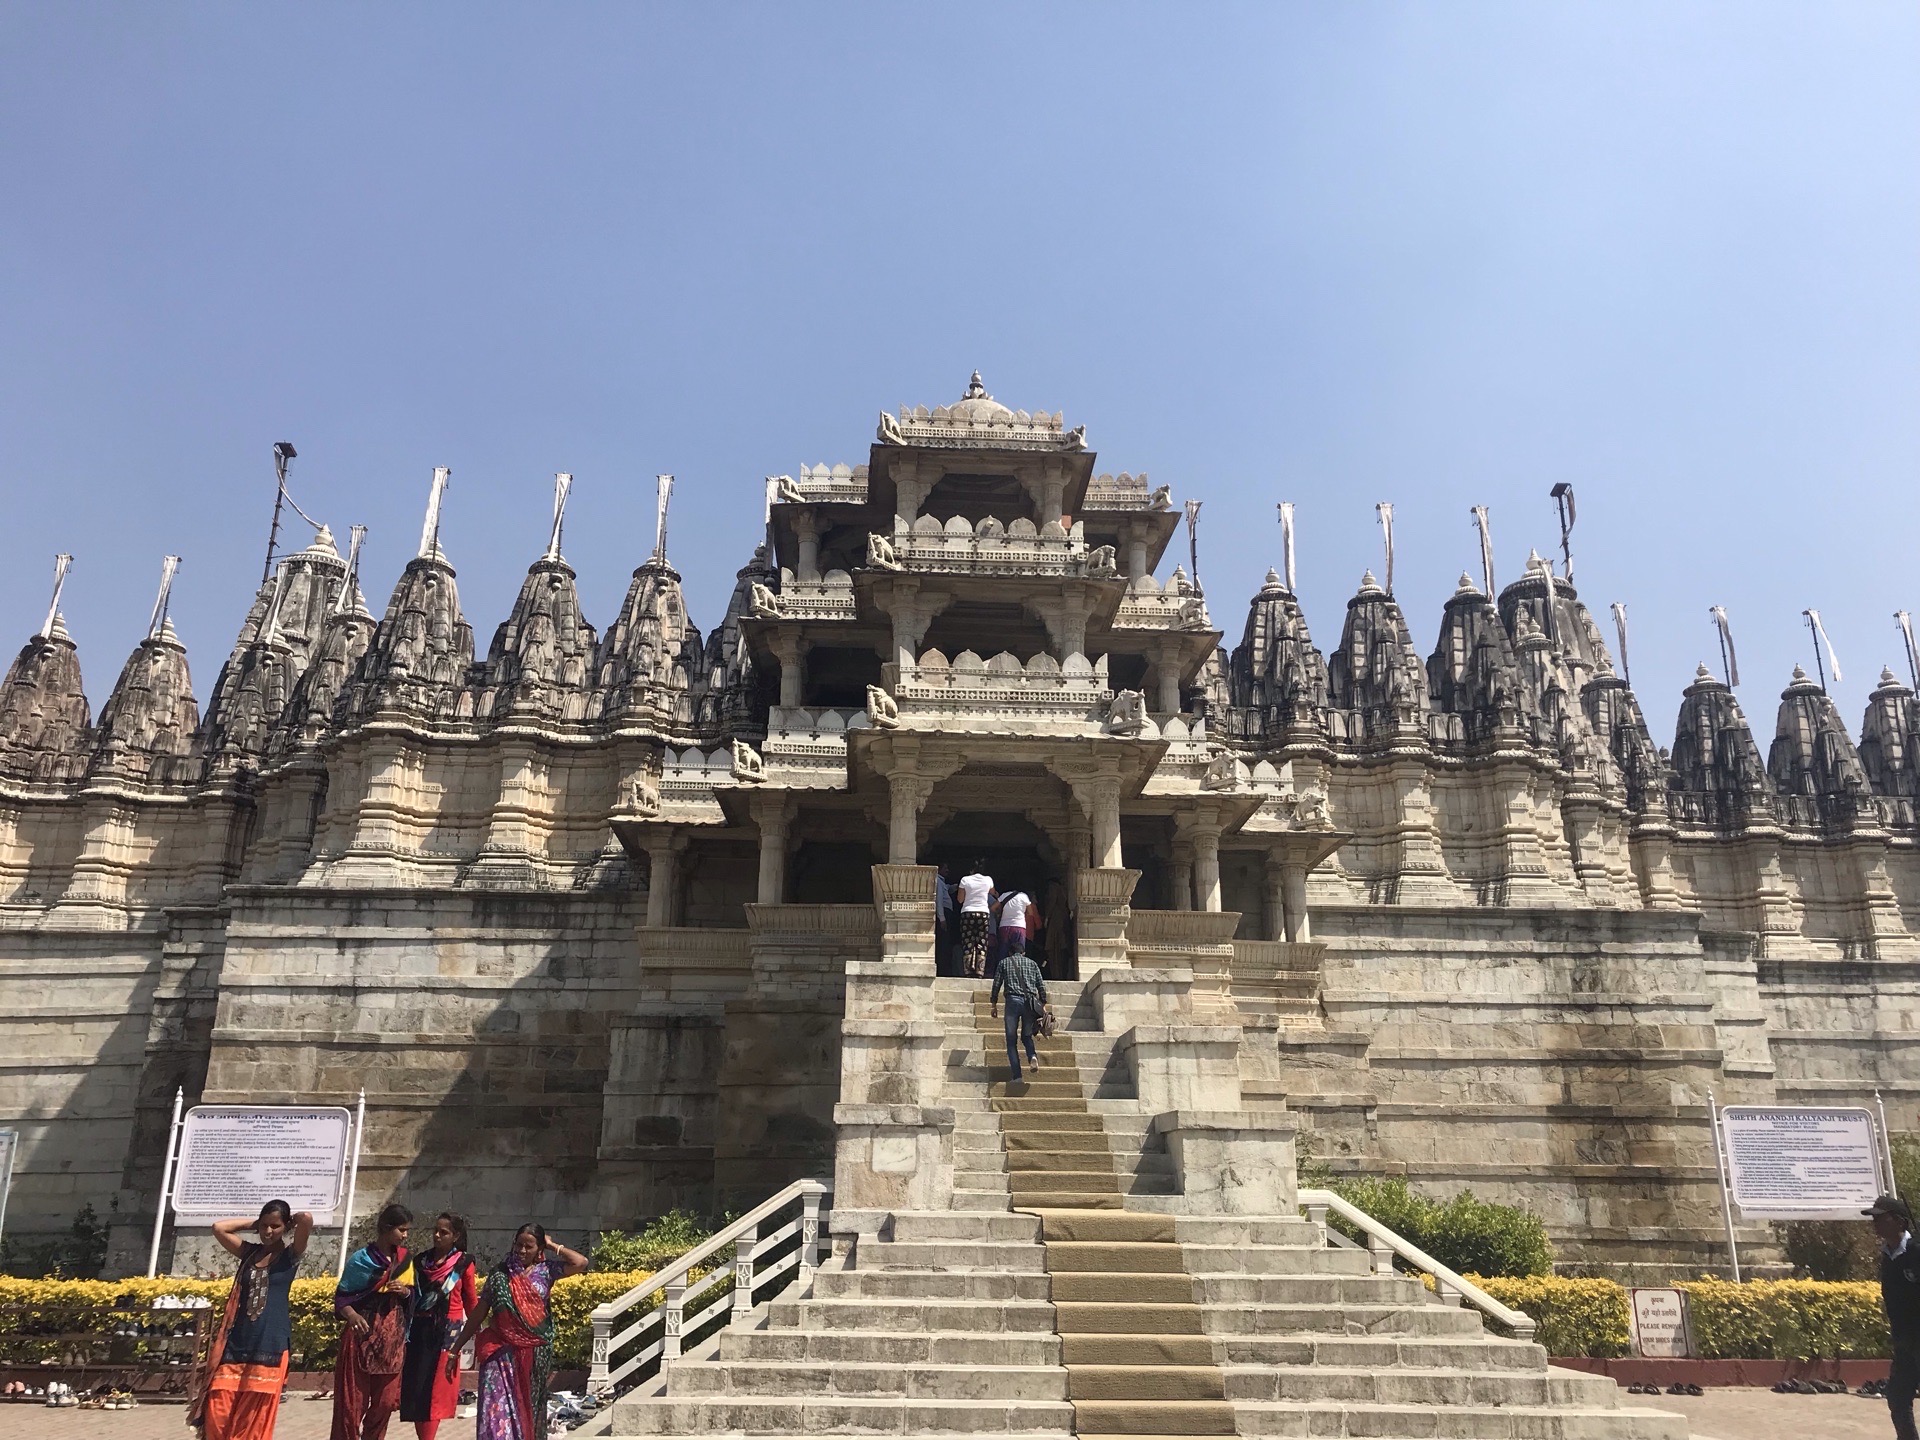 千柱神庙，印度最大、最重要的耆那教神庙之一，有500多年历史，整个寺庙是一座拔地而起的巨大的白色大理